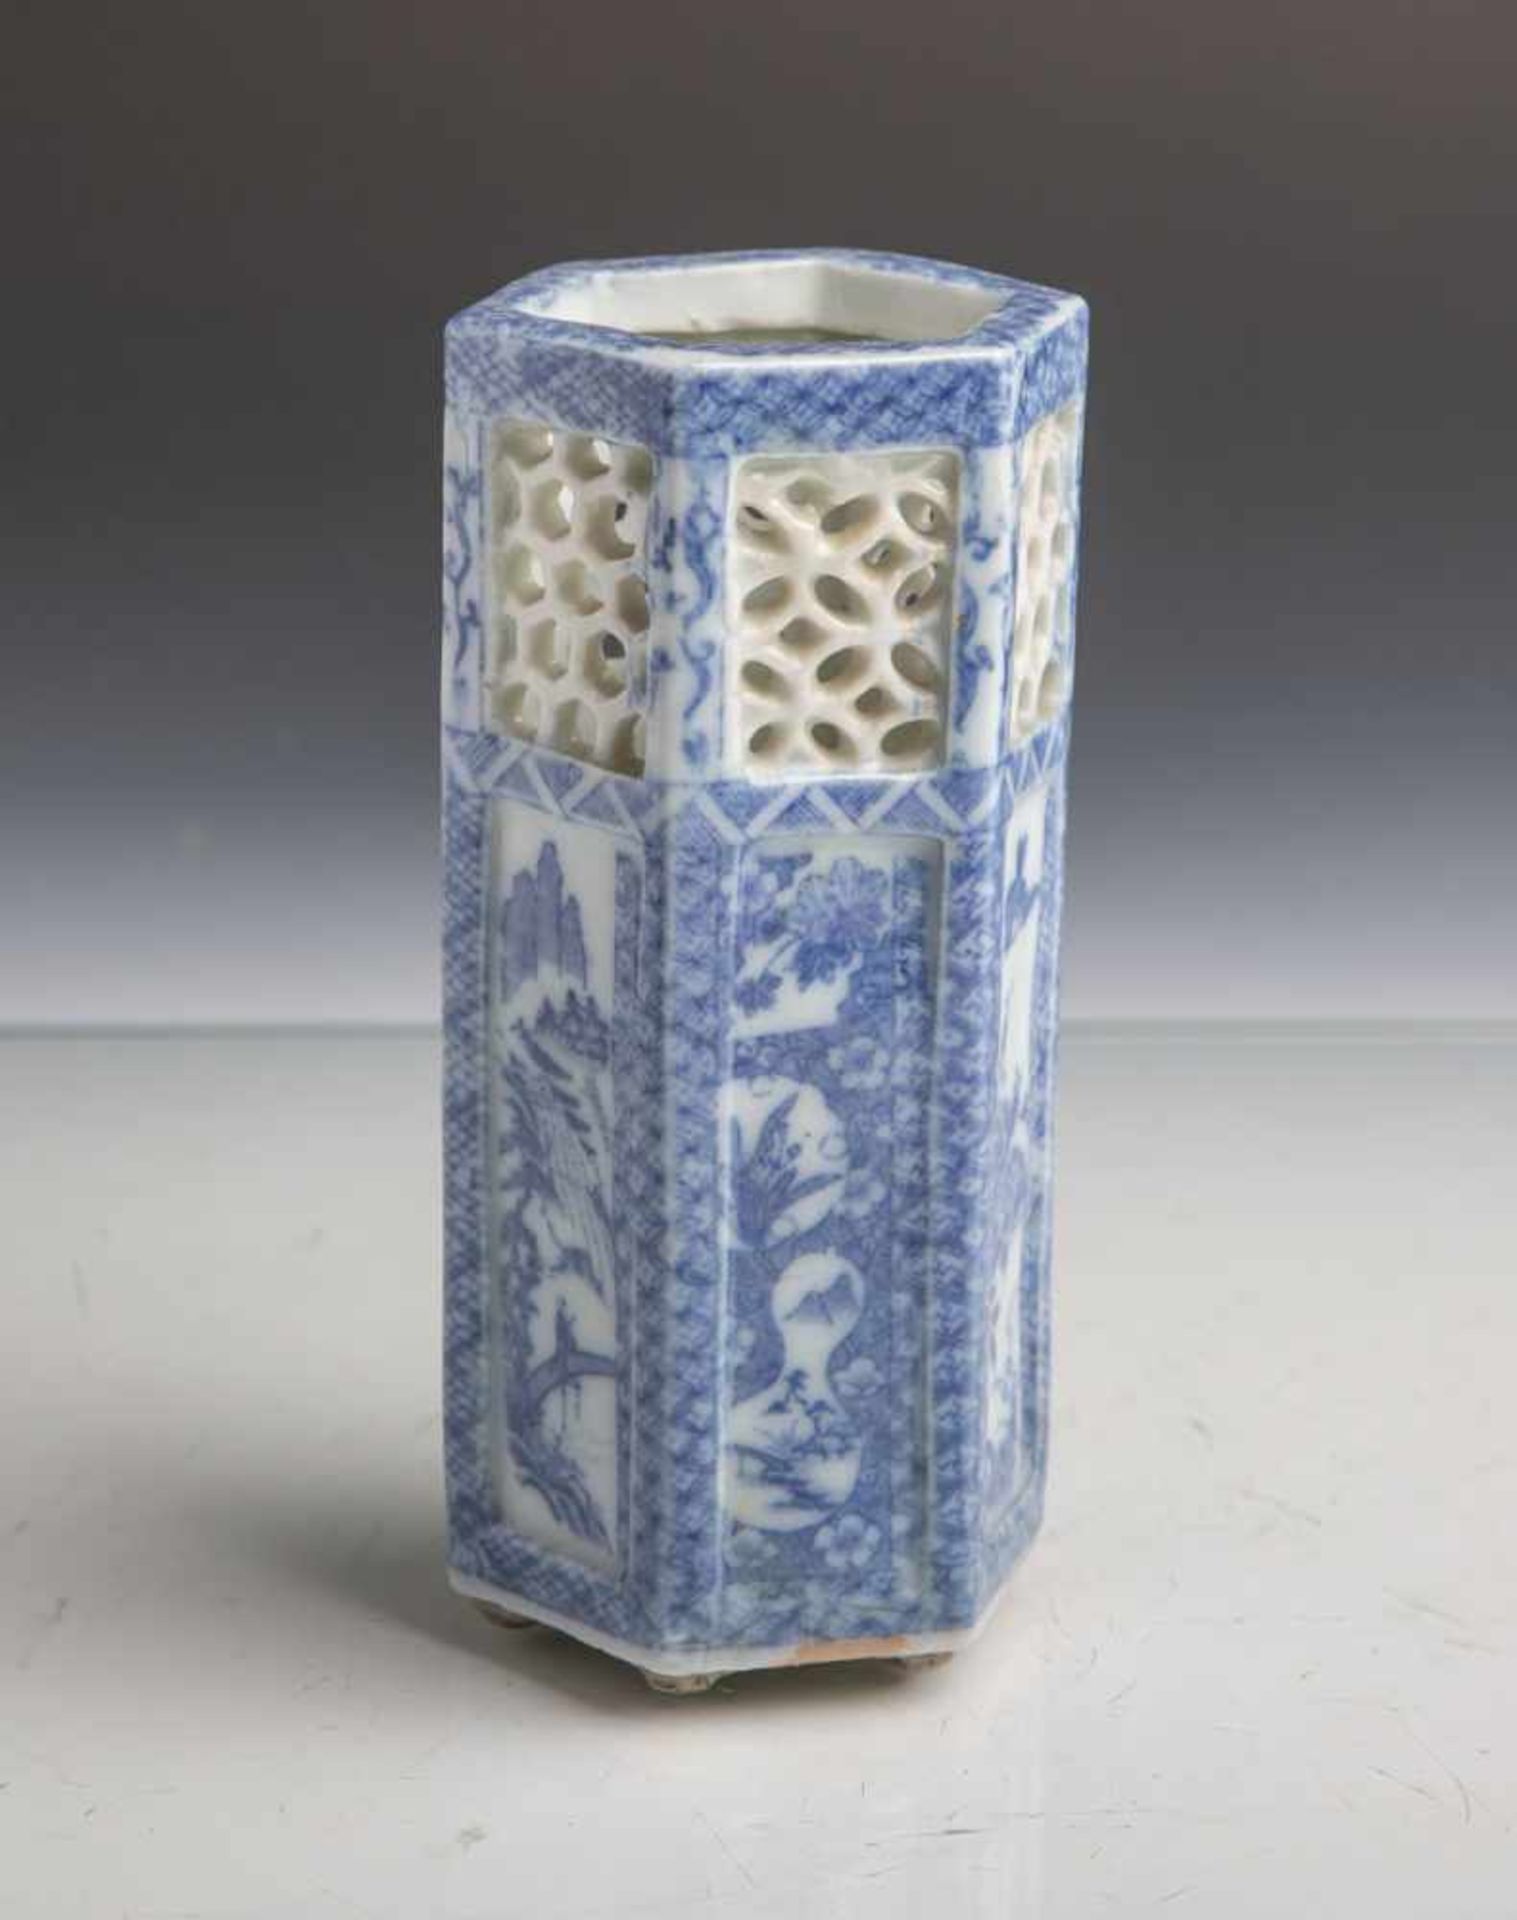 Chinesische Porzellanvase (Alter unbekannt), in Sechskantform, blaue Malerei, oberes